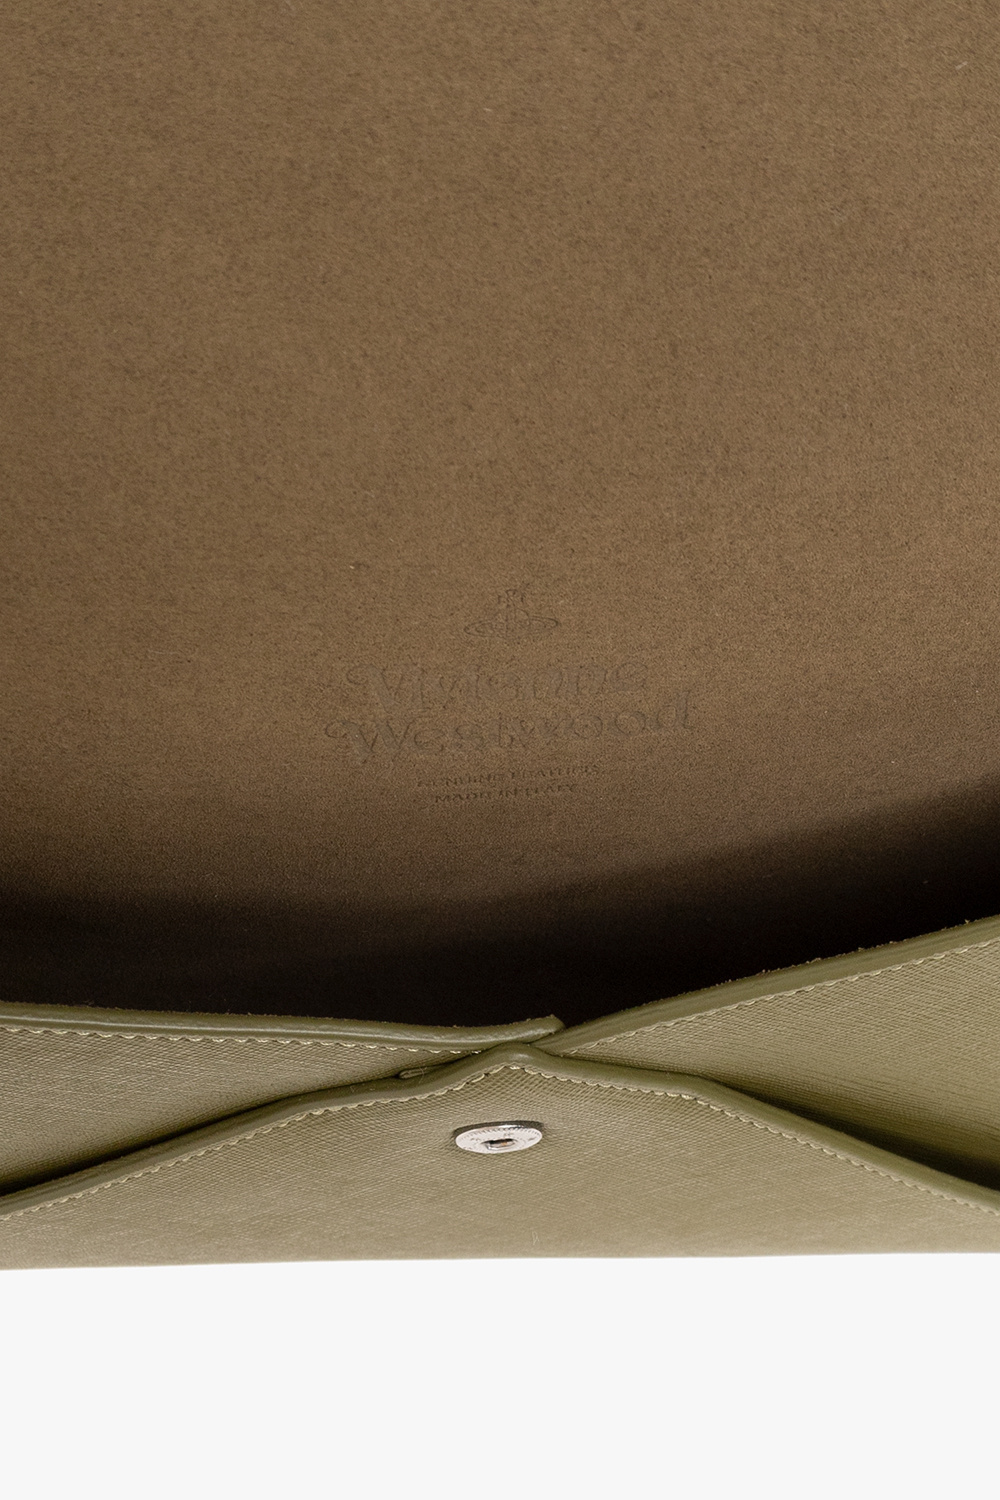 Vivienne Westwood ‘Orb Envelope’ clutch